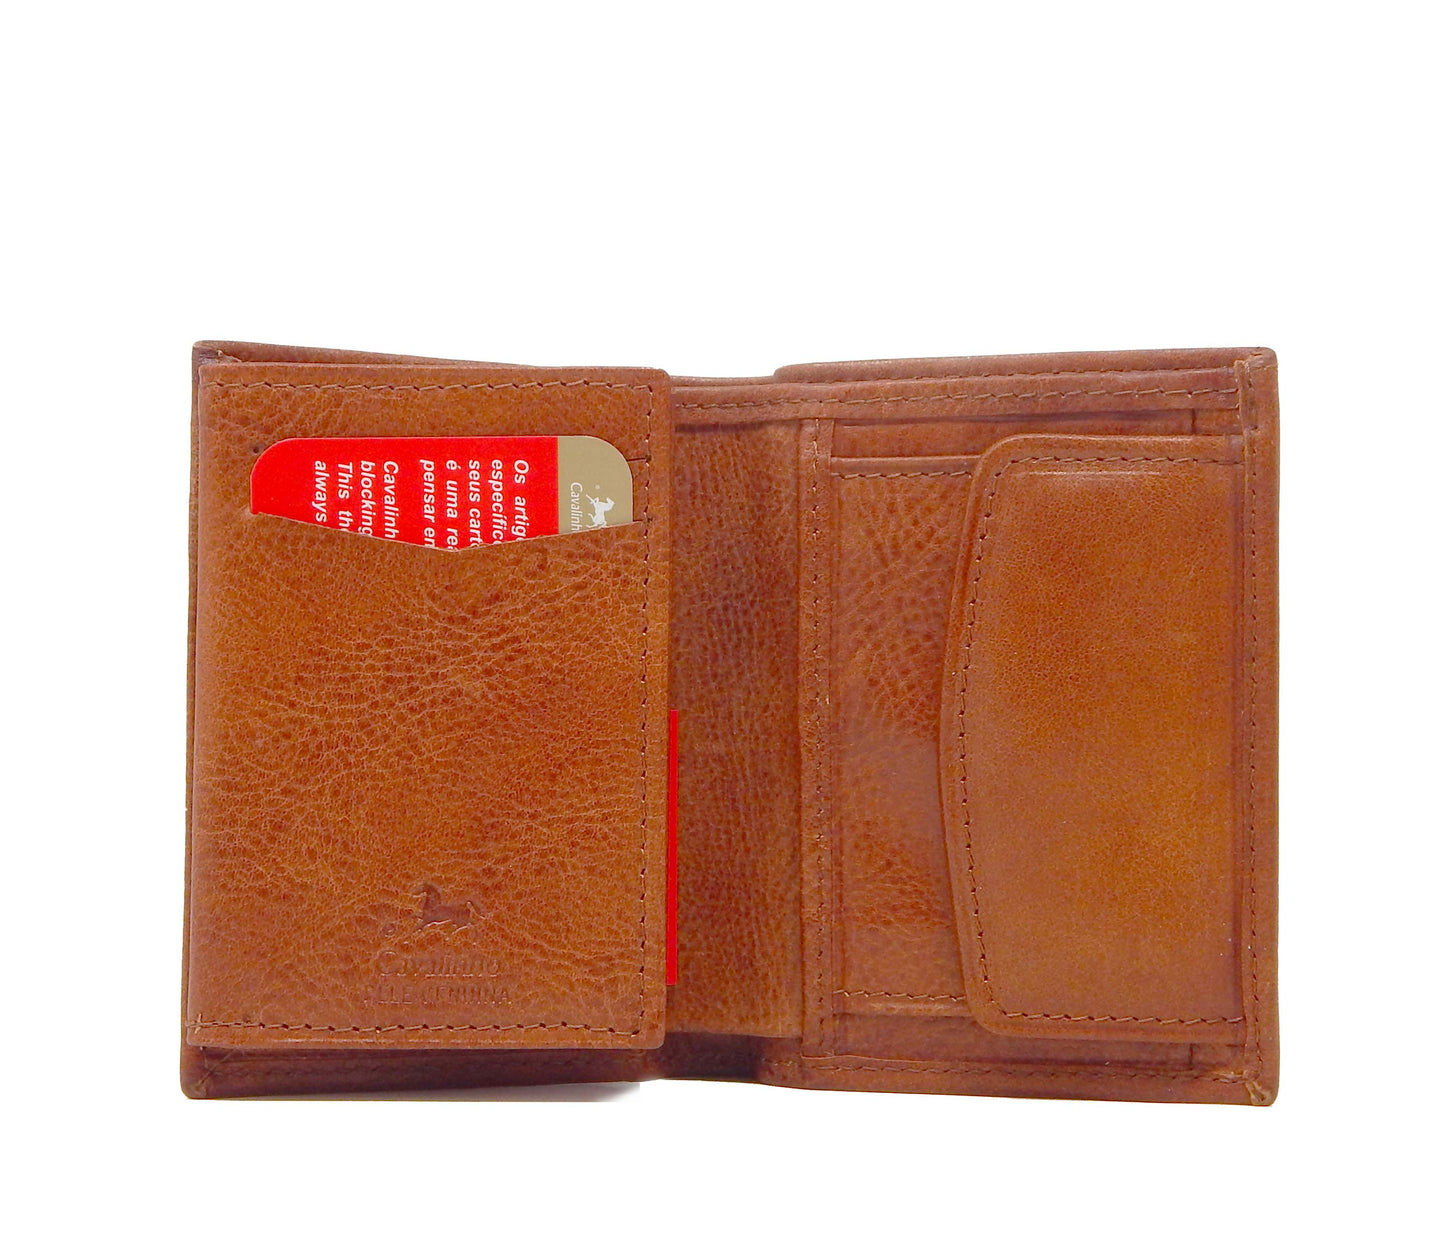 Cavalinho Men's Trifold Leather Wallet - SaddleBrown - 28160522.13.99_4